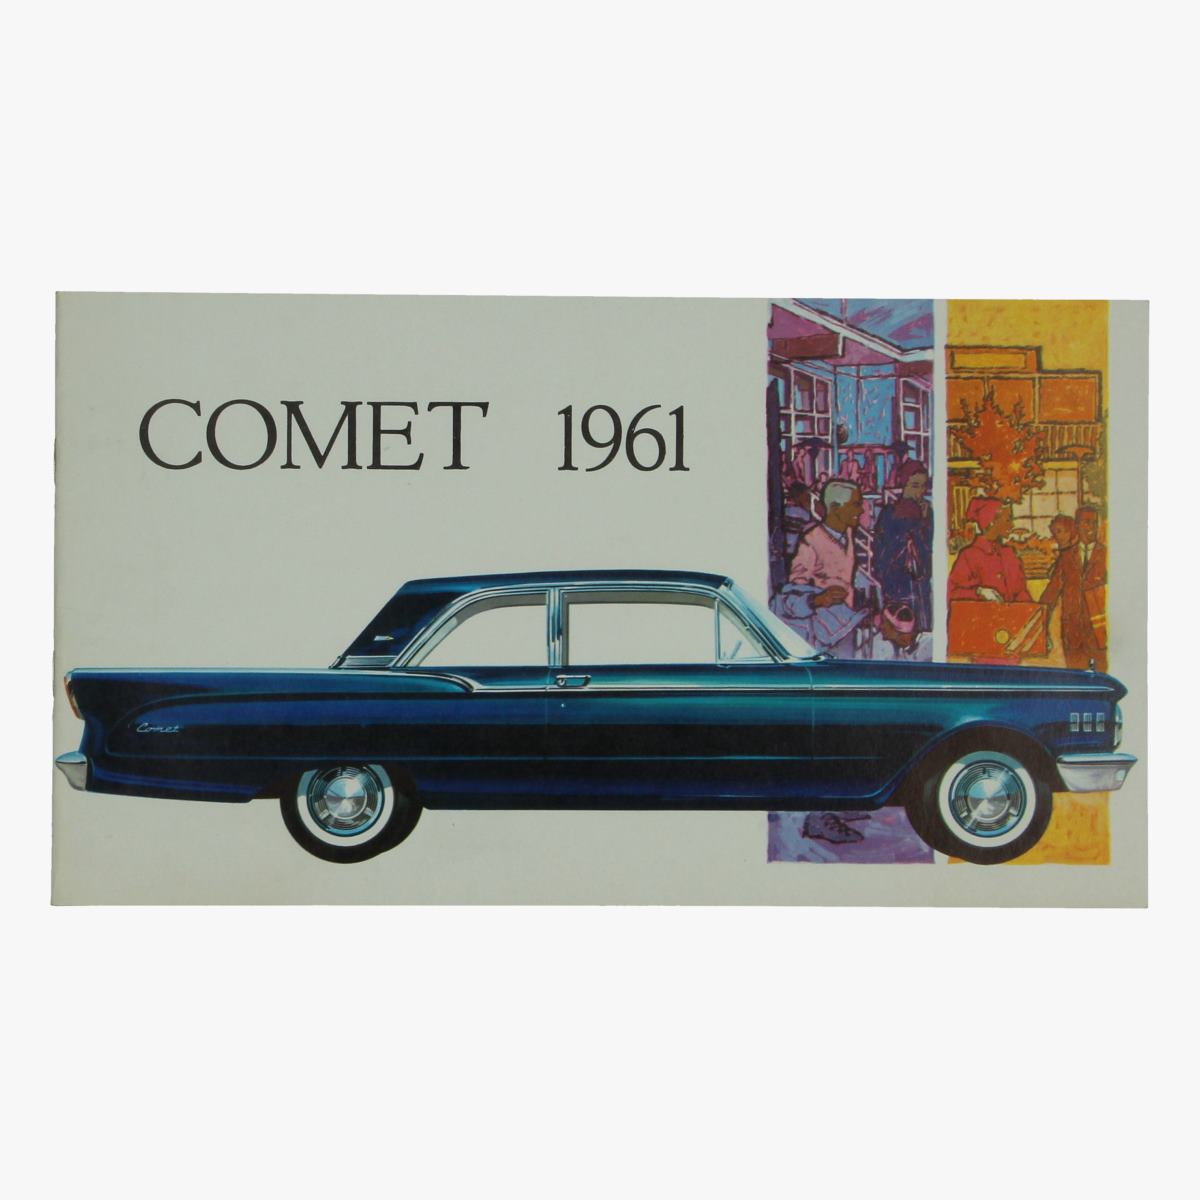 Afbeeldingen van oude reclame boekje comet 1961